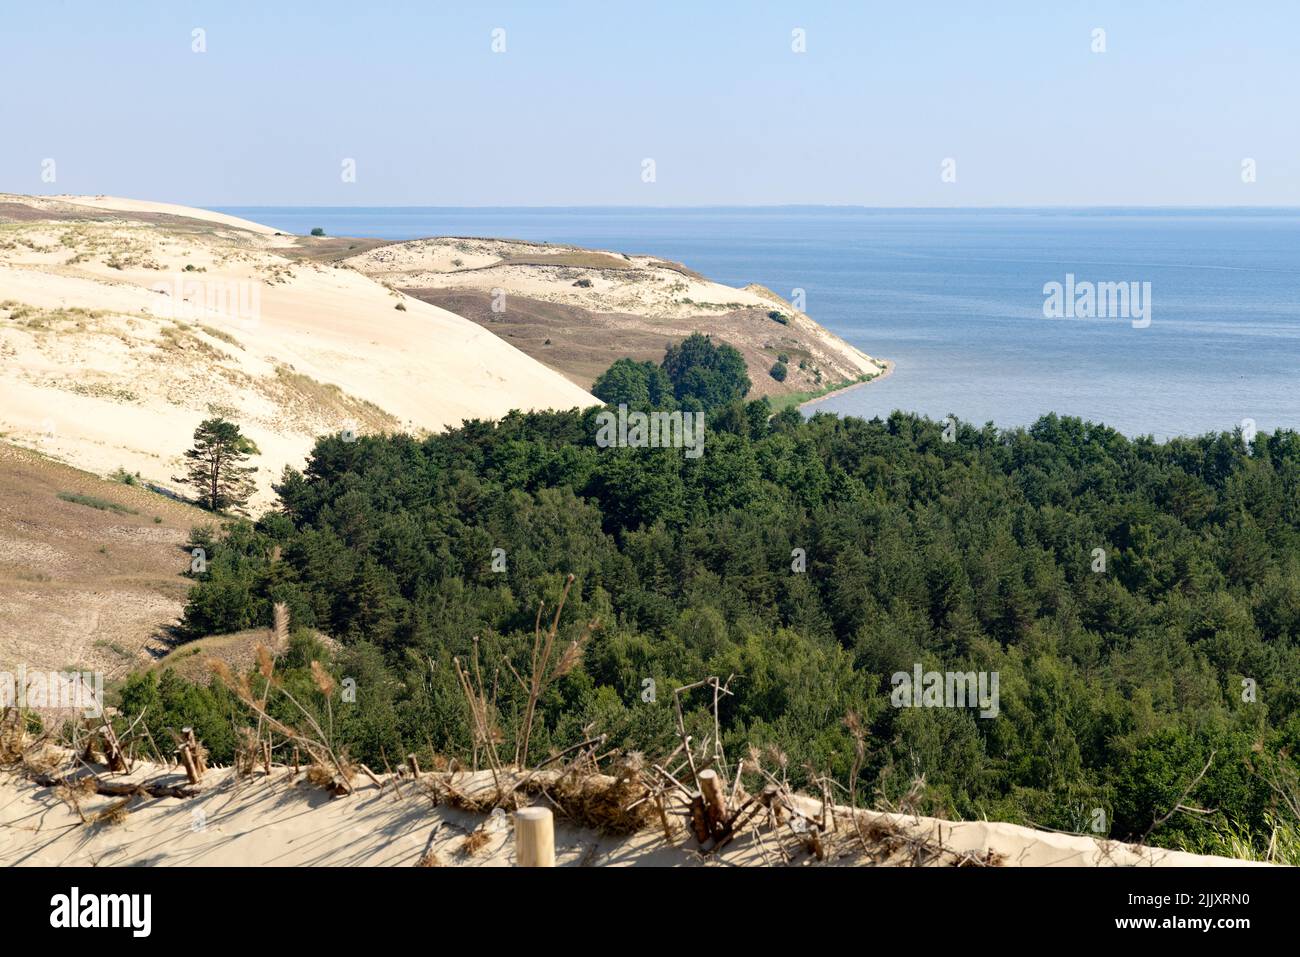 Litauen Landschaft - der Blick auf die Ostseeküste am Kurischen Nehrung Nationalpark, Litauen, Baltischen Staaten, Europa Stockfoto